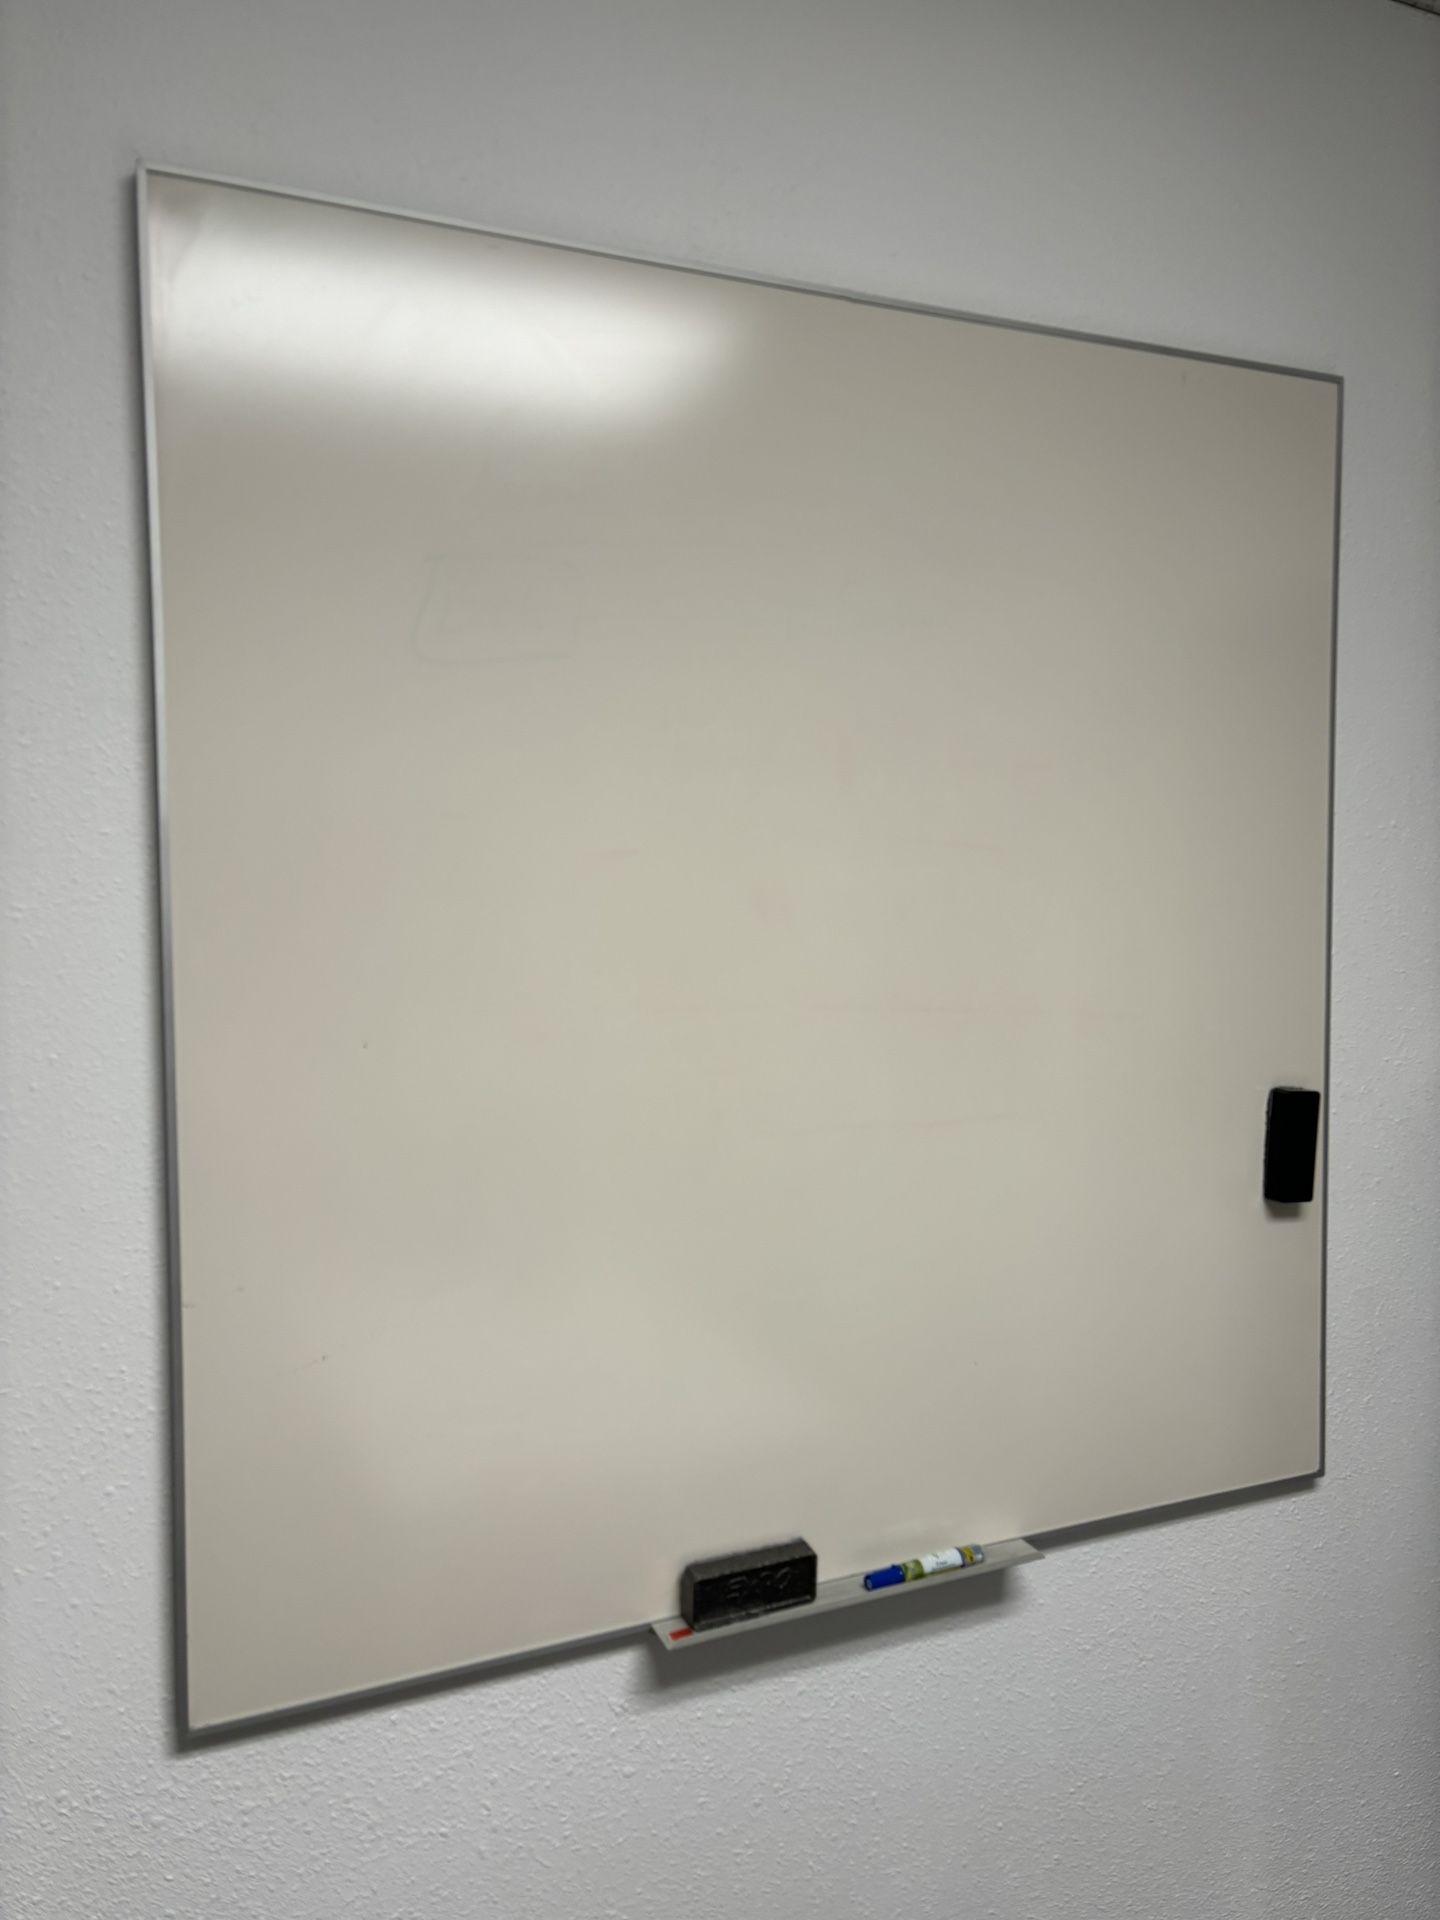 White board (48”x 48”)